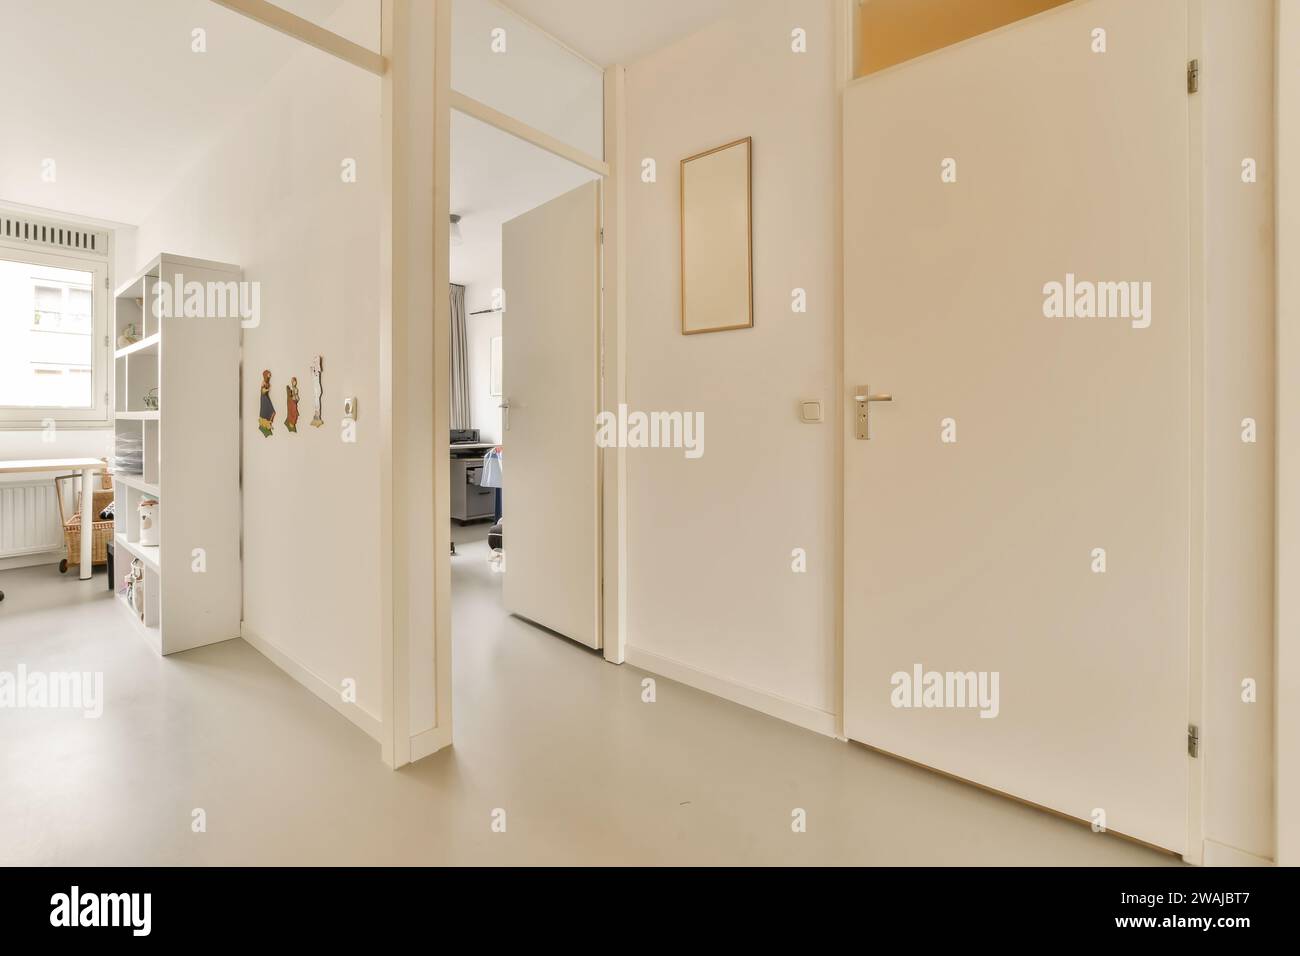 Innenraum des leeren Flurs mit weißen Türen, die zu verschiedenen Zimmern in einem modernen Apartment mit hellen Wänden und Boden führen Stockfoto